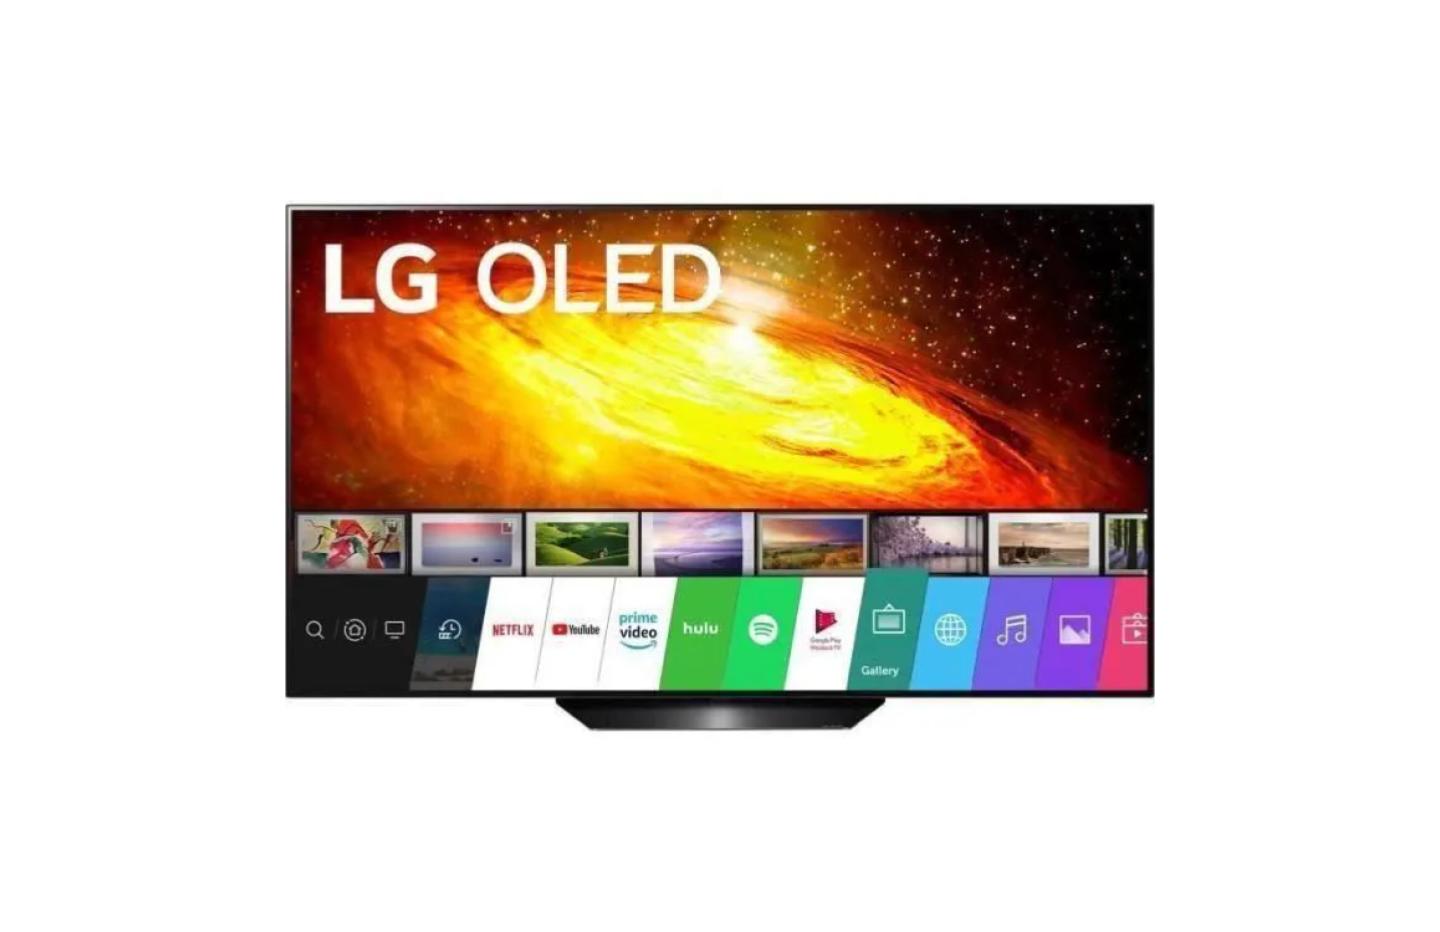 La TV LG OLED 65BX3 profite d’une encore plus incroyable baisse de prix que la dernière fois